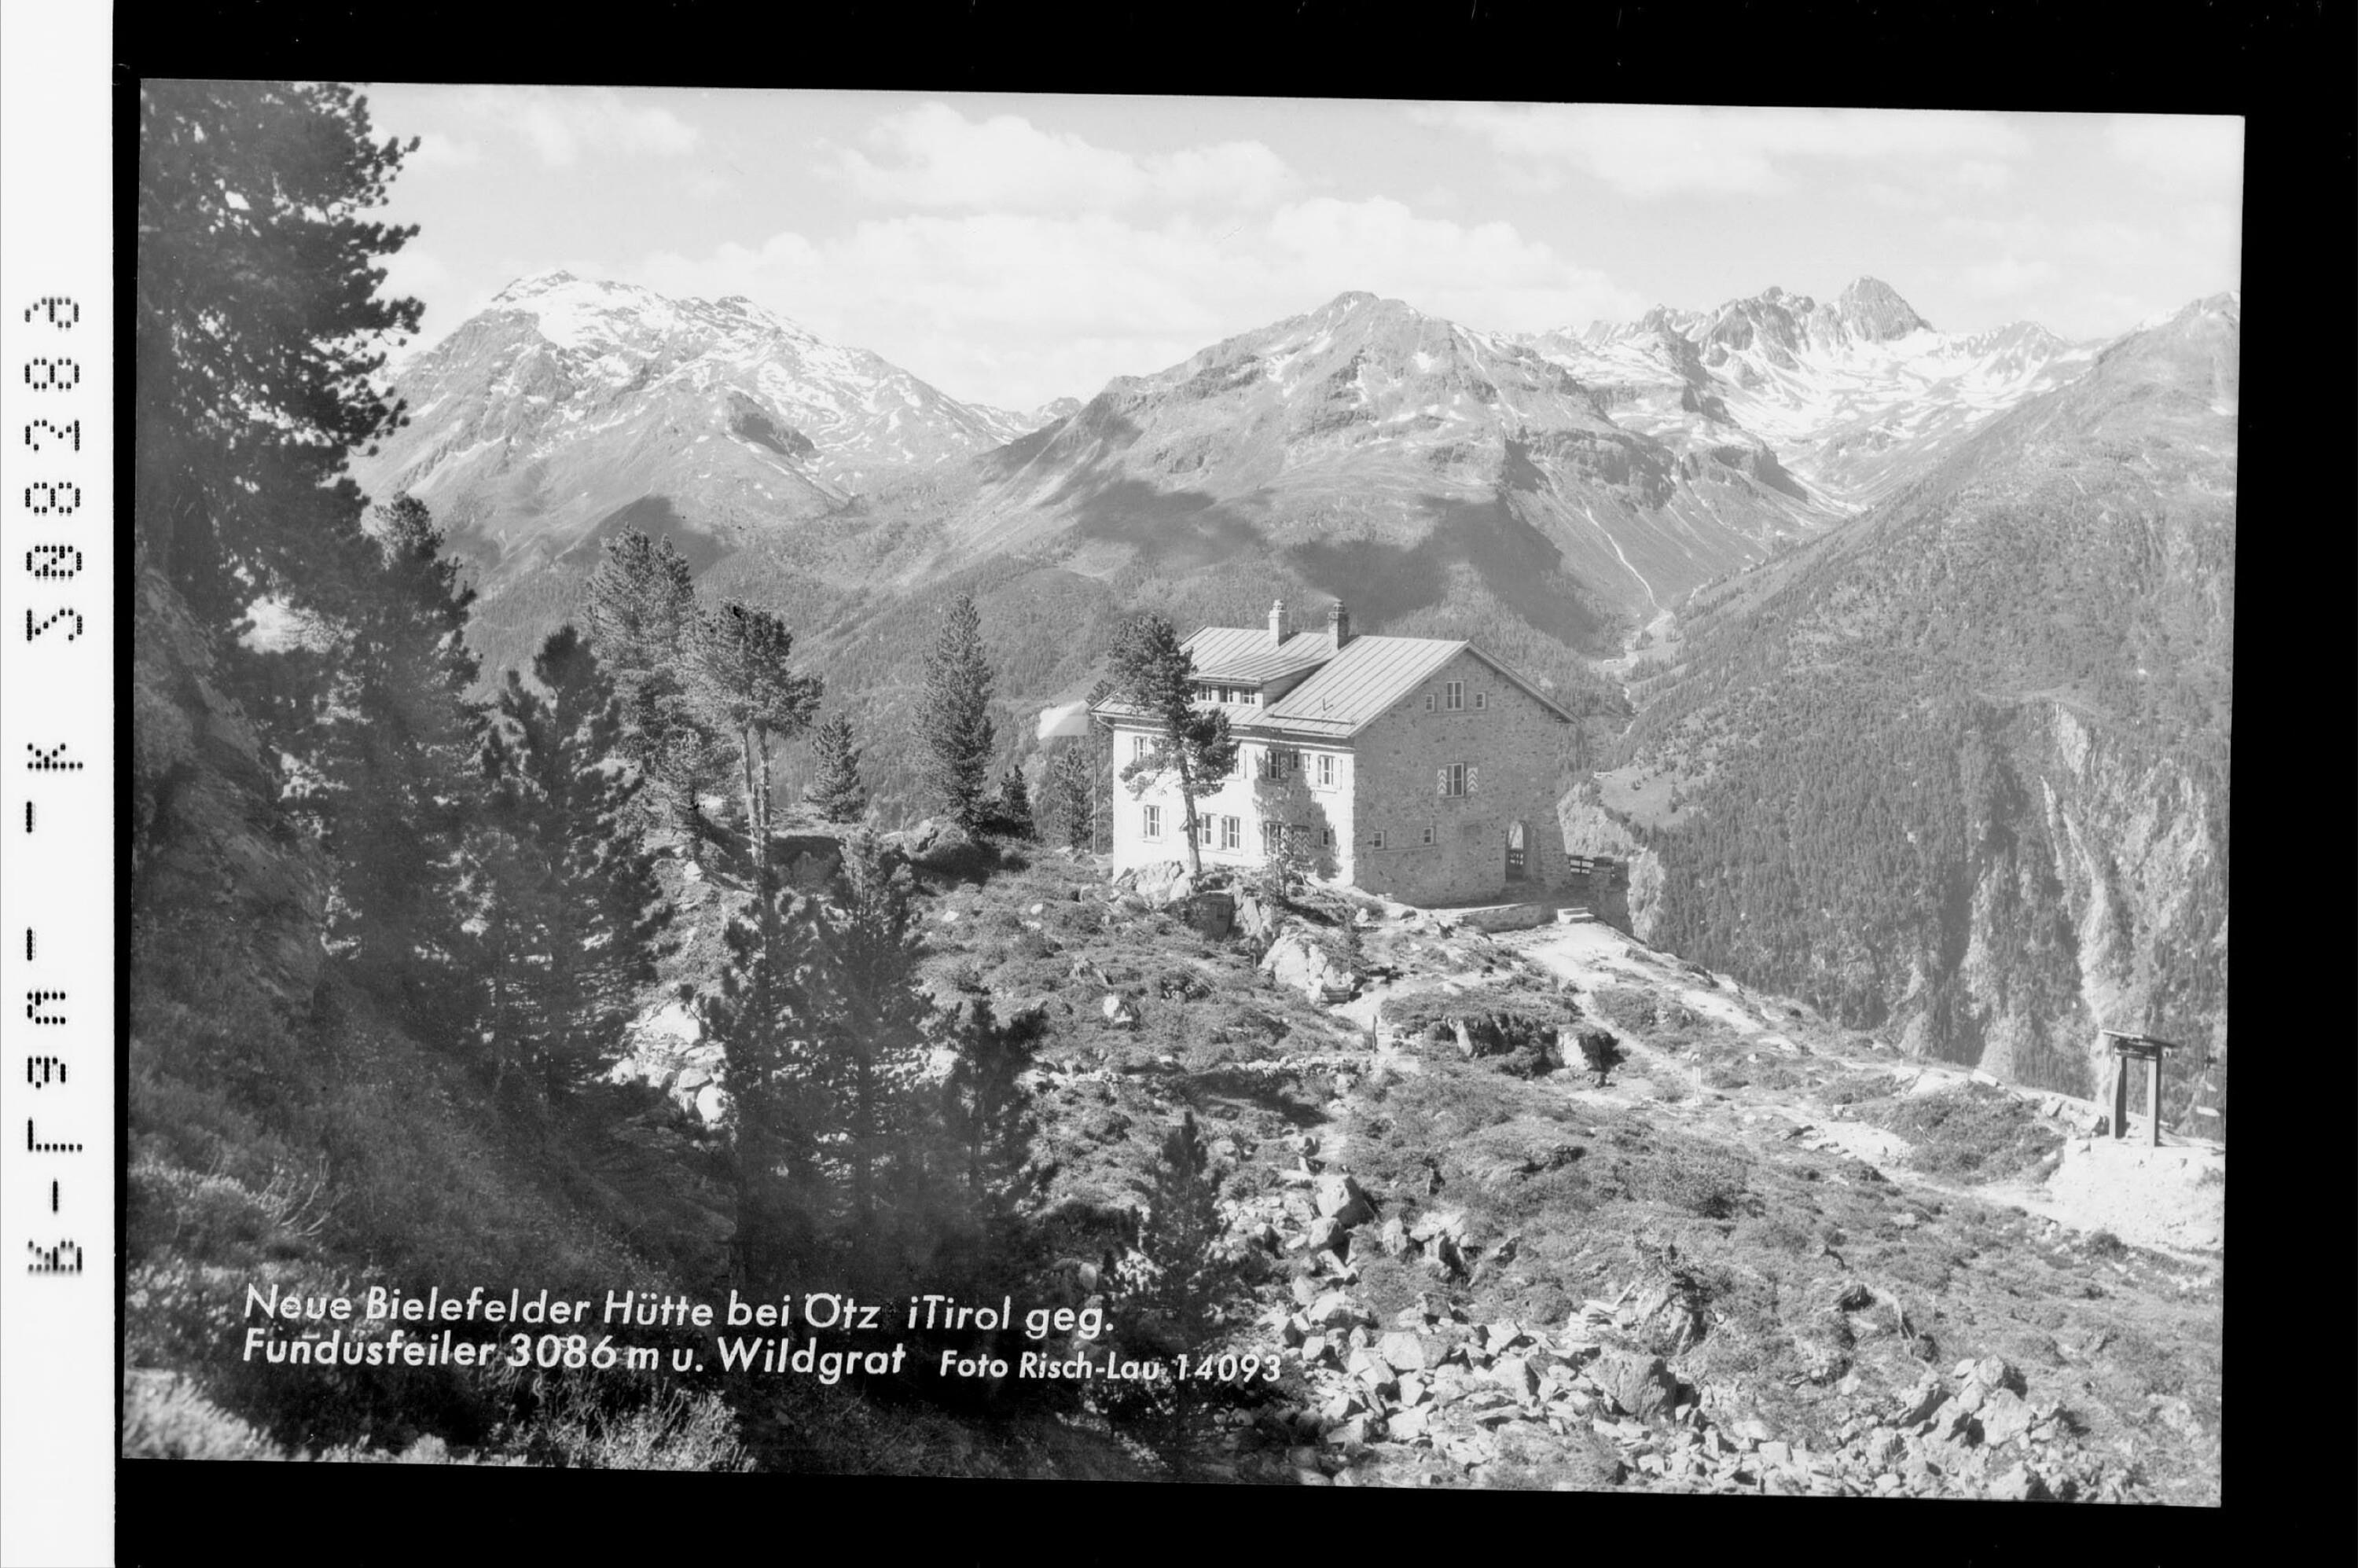 Neue Bielefelder-Hütte bei Ötz in Tirol gegen Fundusfeiler 3086 m und Wildgrat></div>


    <hr>
    <div class=